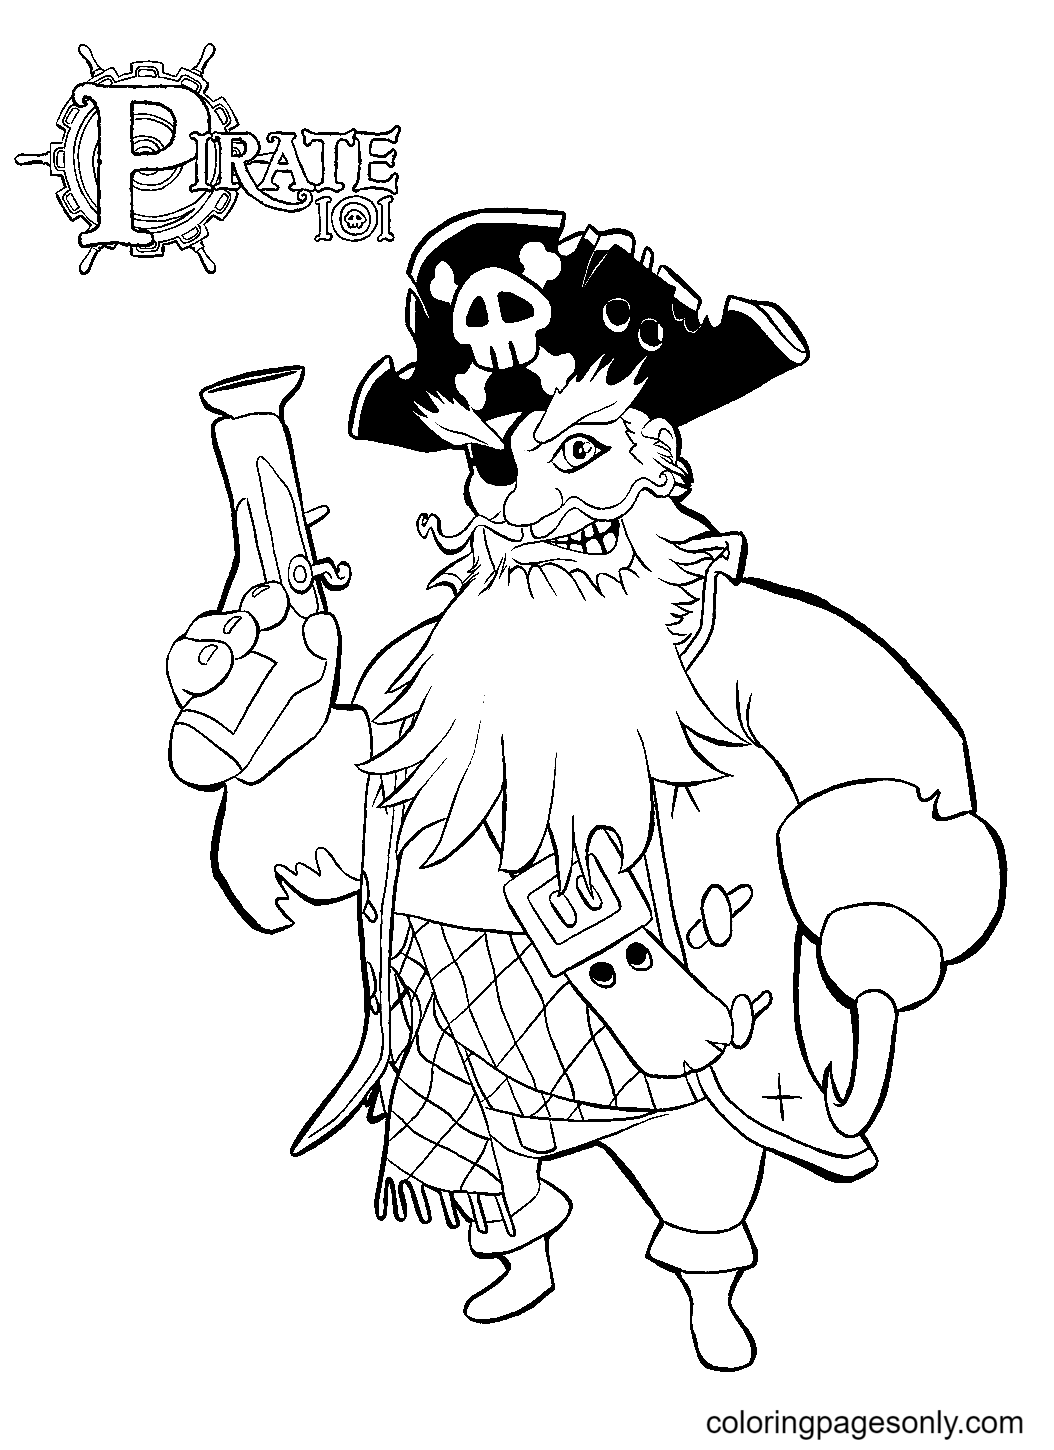 Pirata Assustador from Pirata